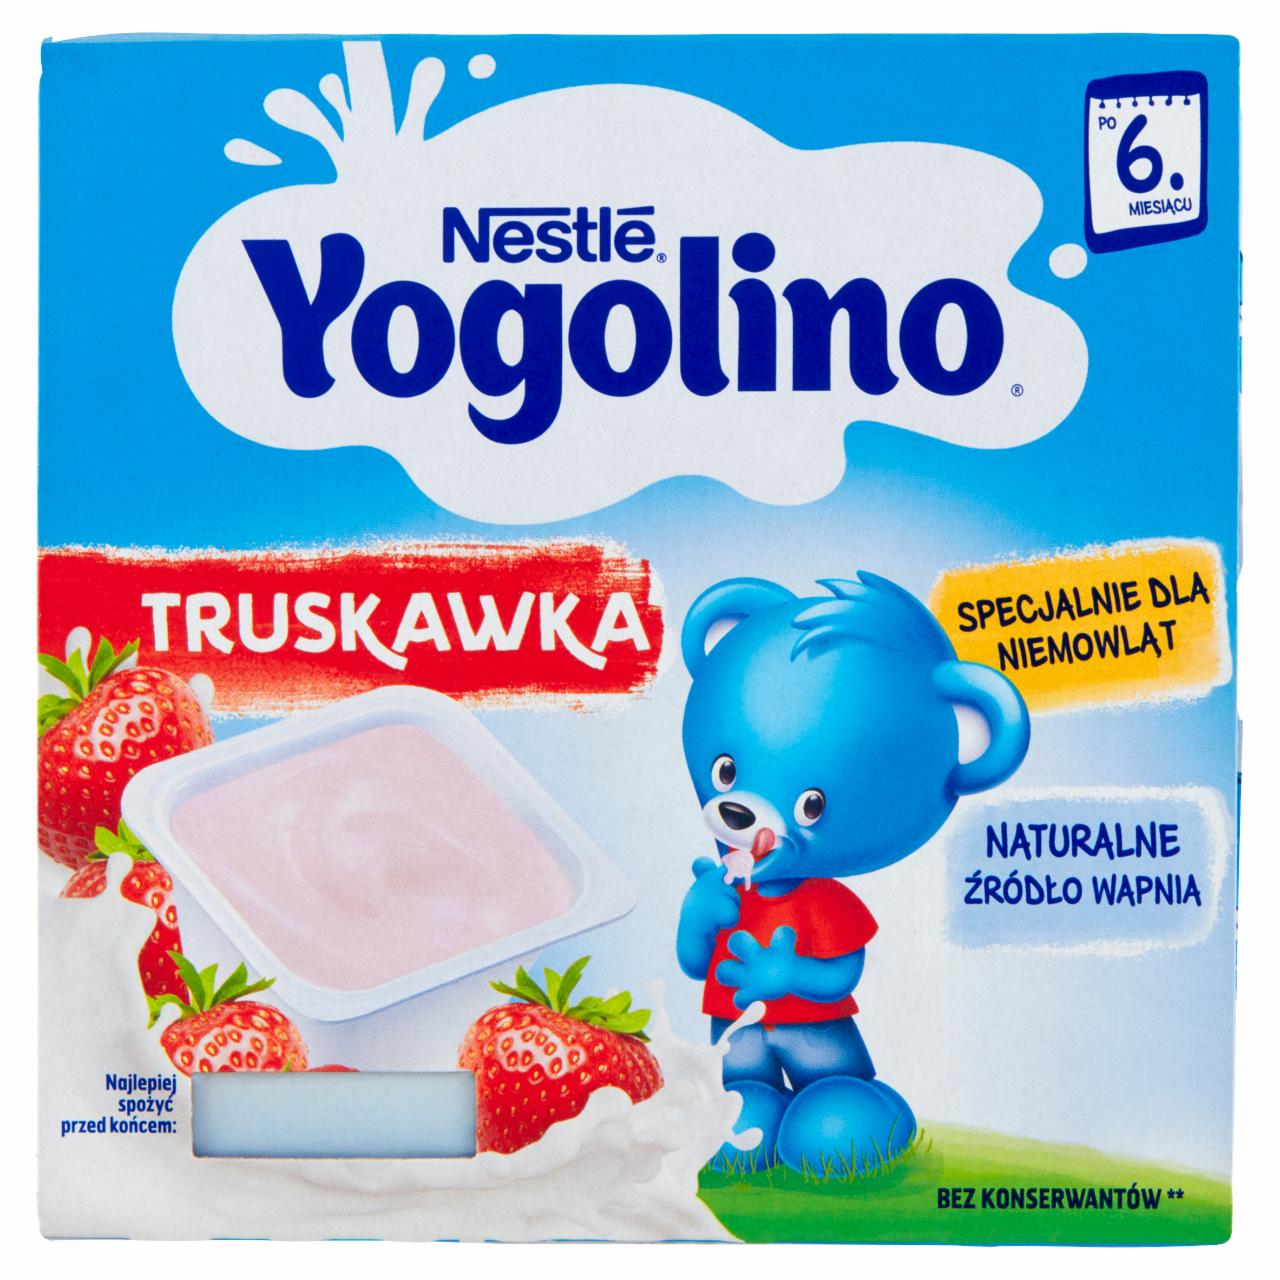 Zdjęcia - Nestlé Yogolino Deserek mleczno-owocowy truskawka dla niemowląt po 6. miesiącu 400 g (4 x 100 g)